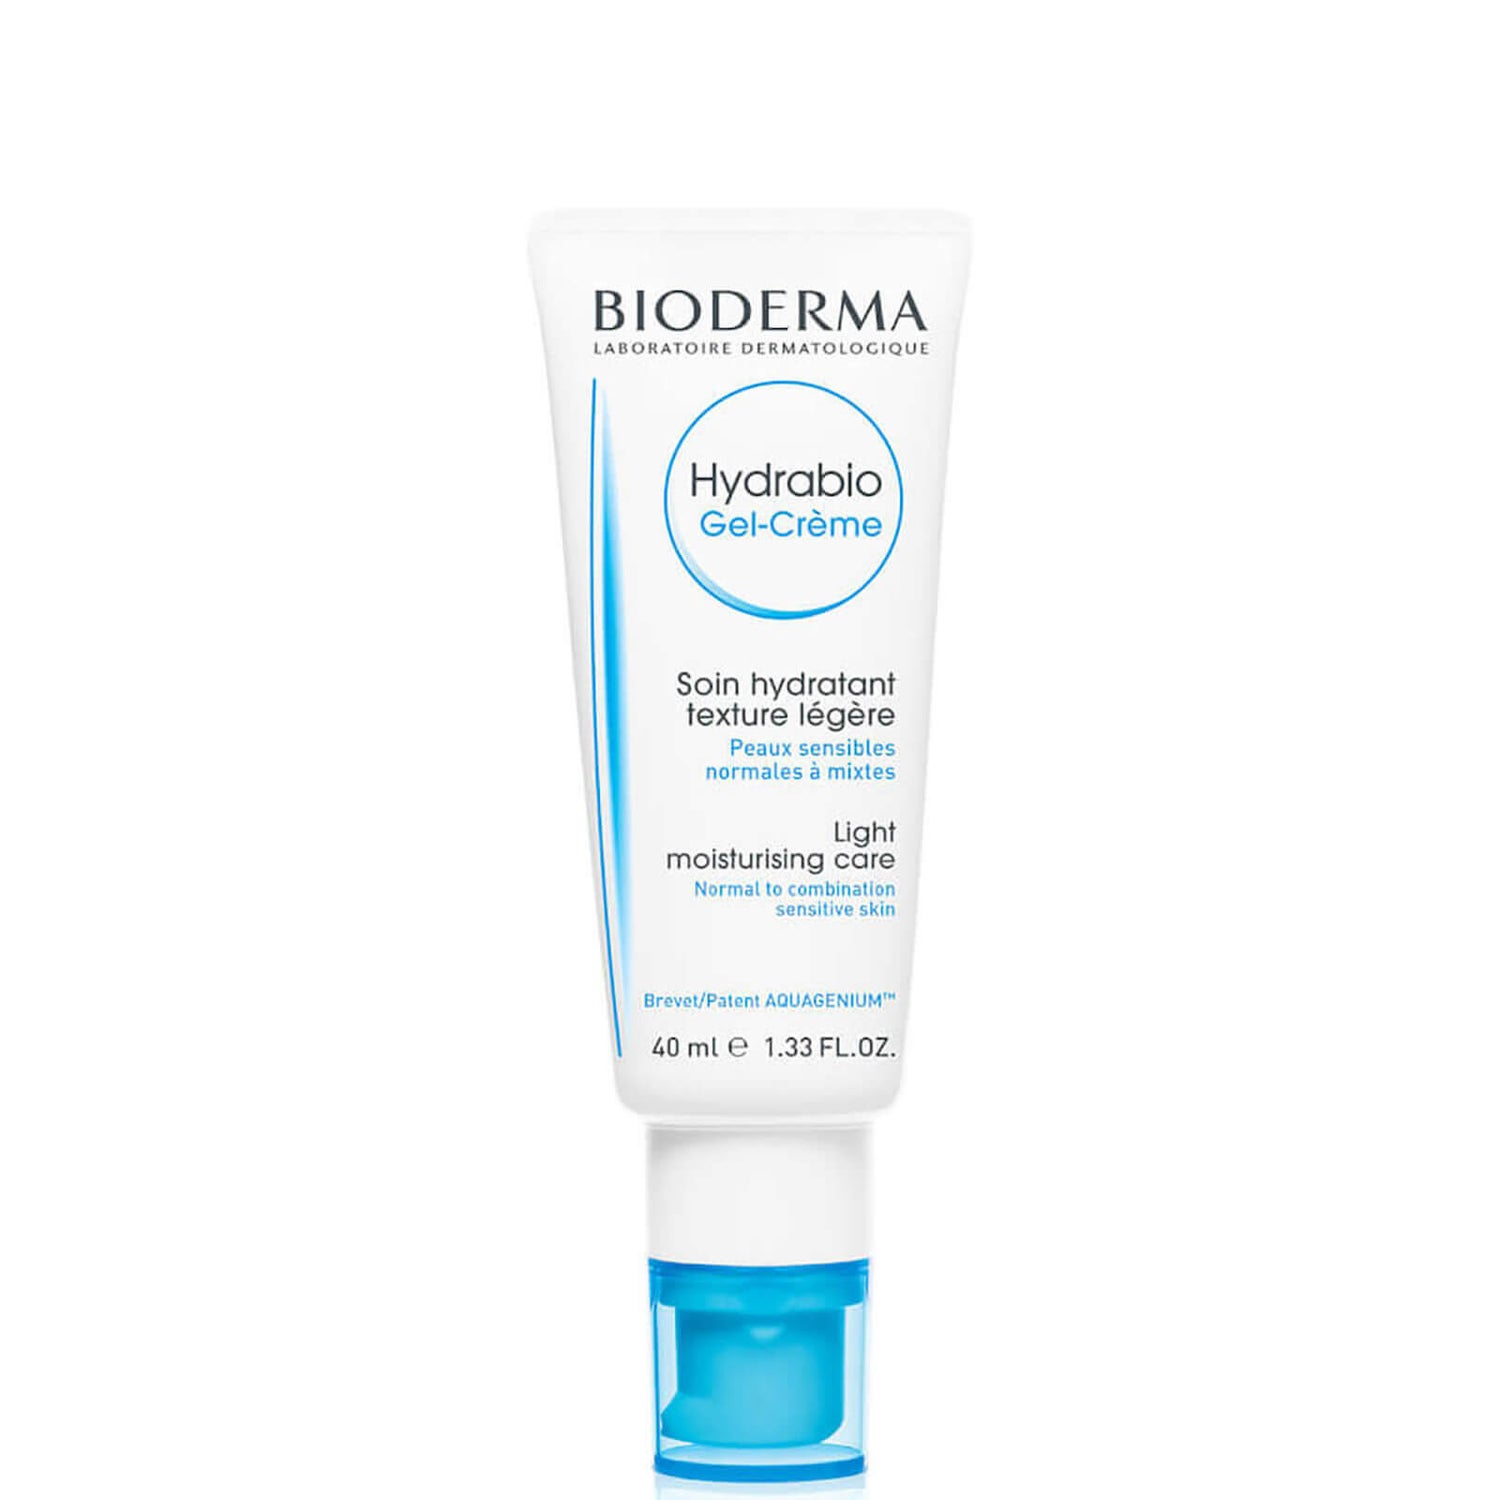 Bioderma Hydrabio hydrating gel 40ML